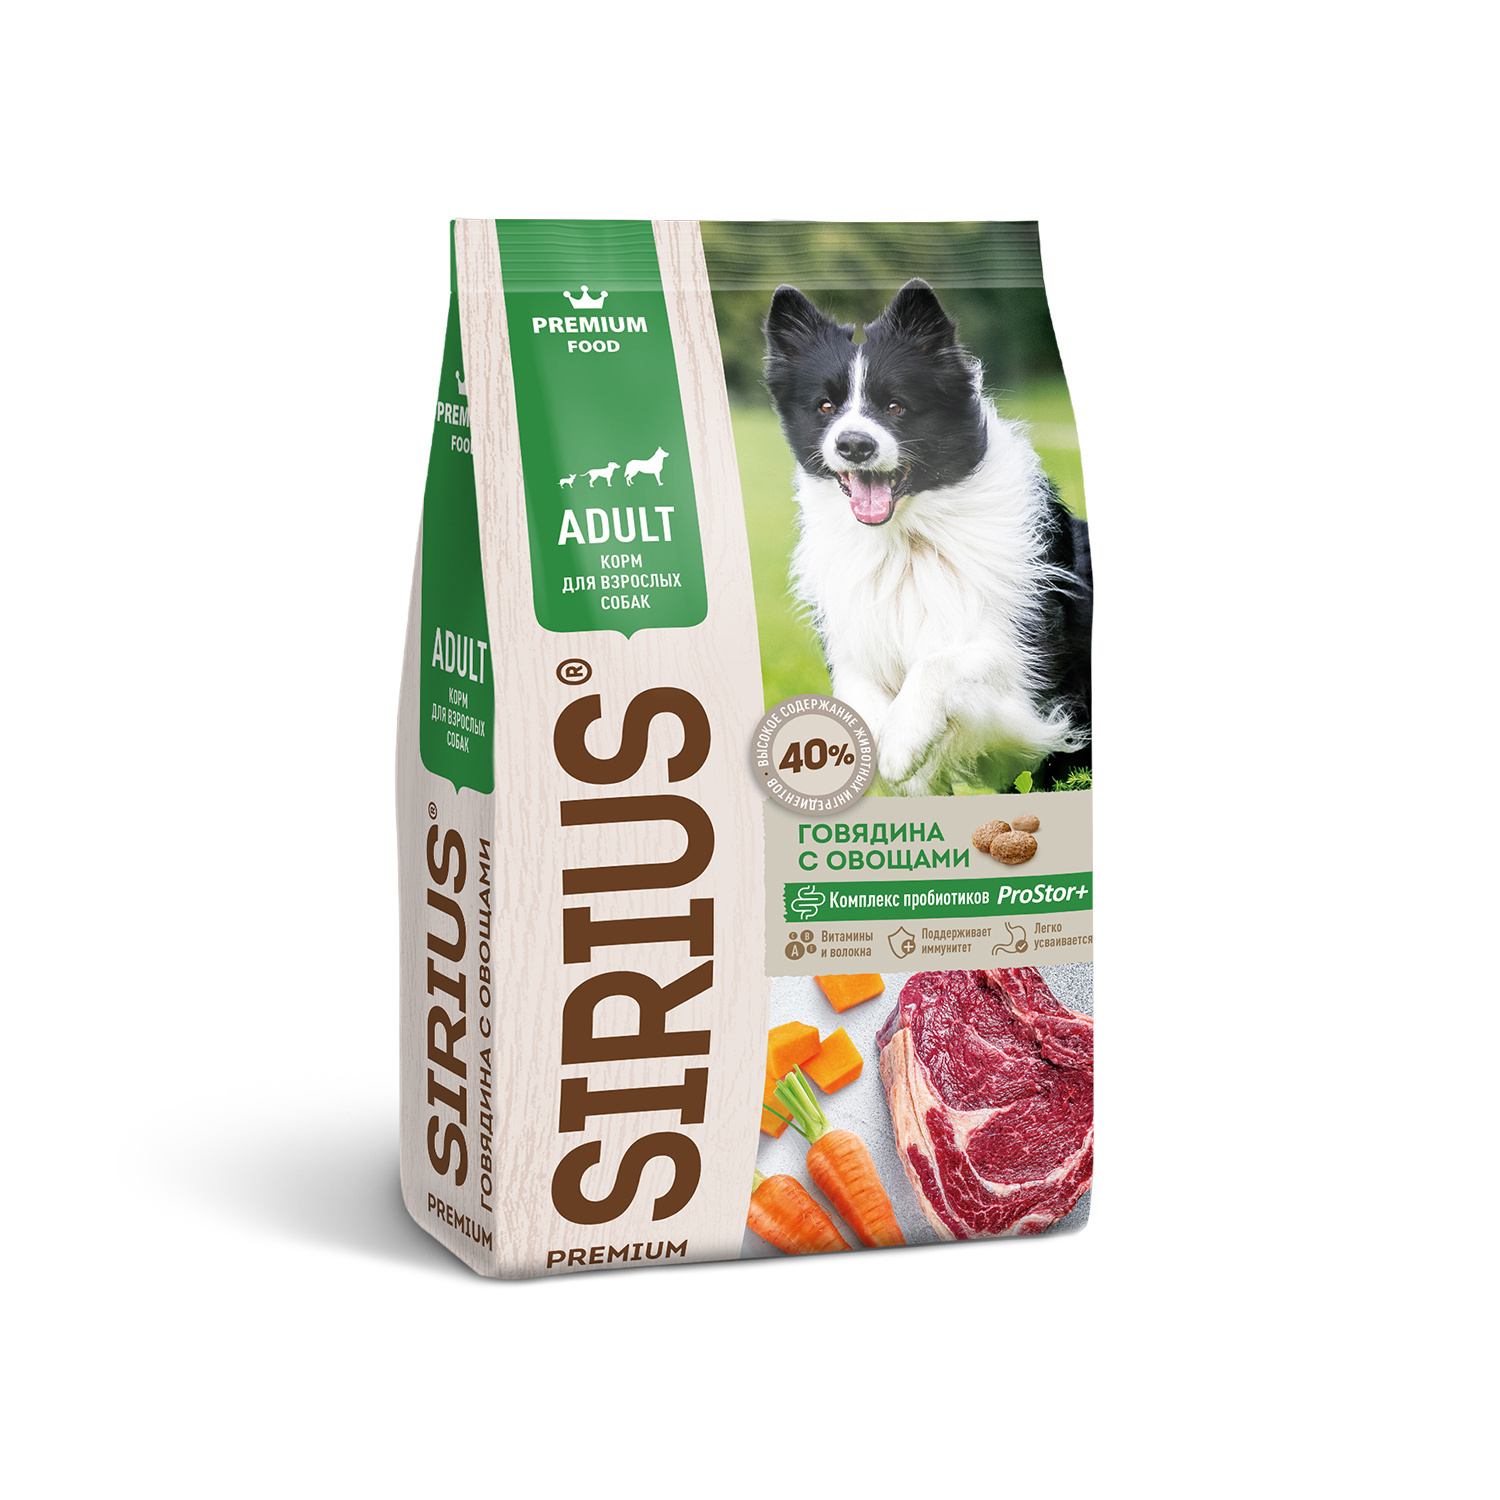 Sirius Sirius сухой корм для собак, говядина с овощами (15 кг) 60050